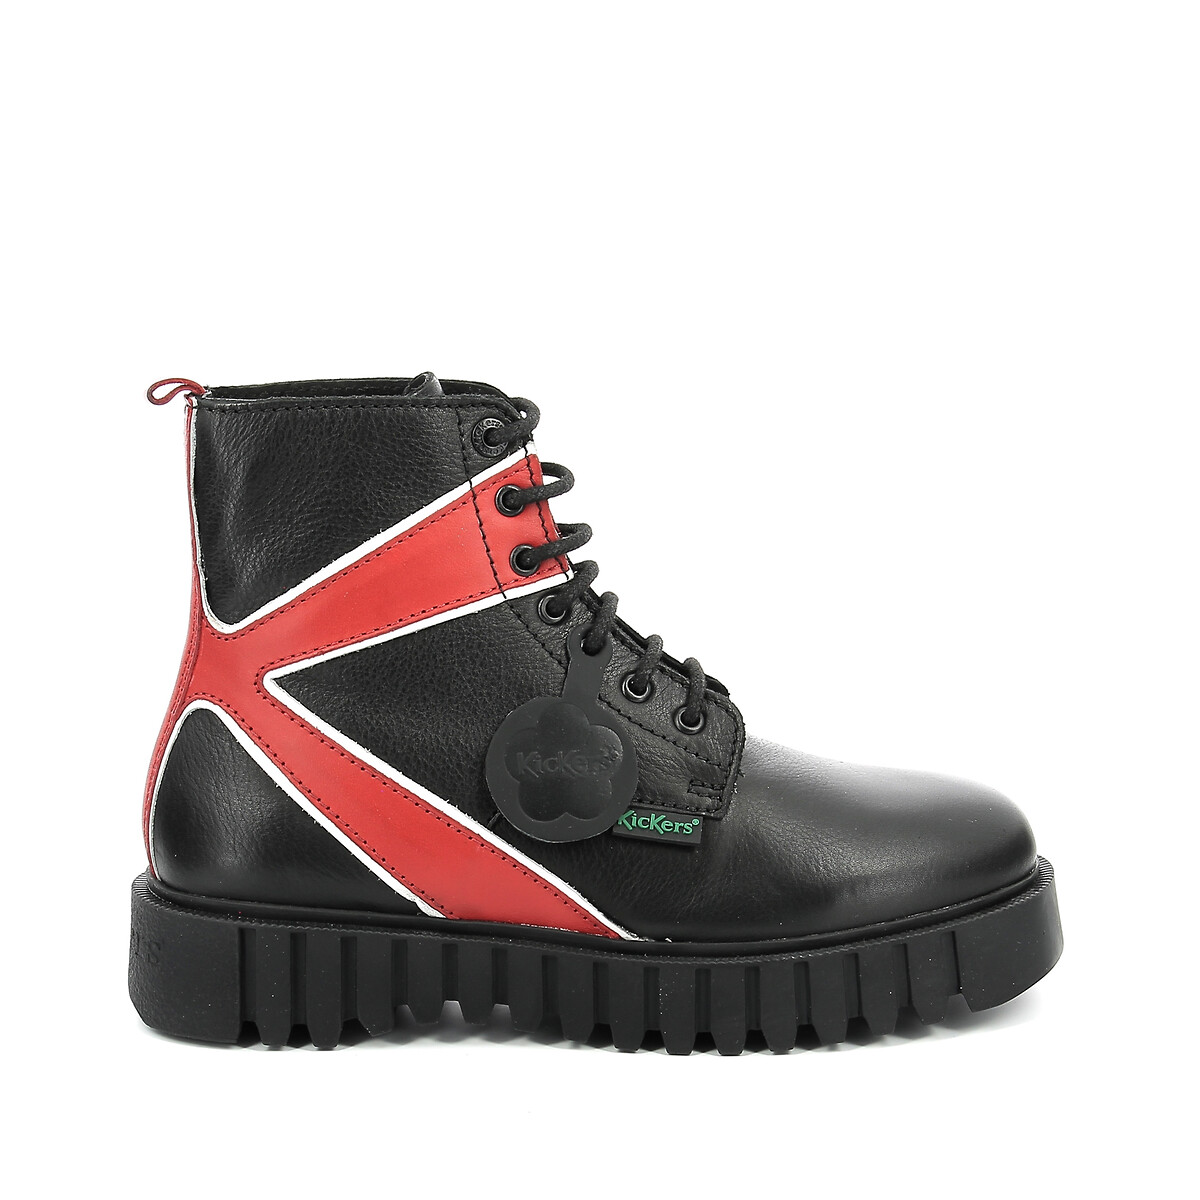 Boots cuir Kick Fabulous La Redoute Femme Chaussures Chaussures compensées & Plateformes Bottes plateforme 